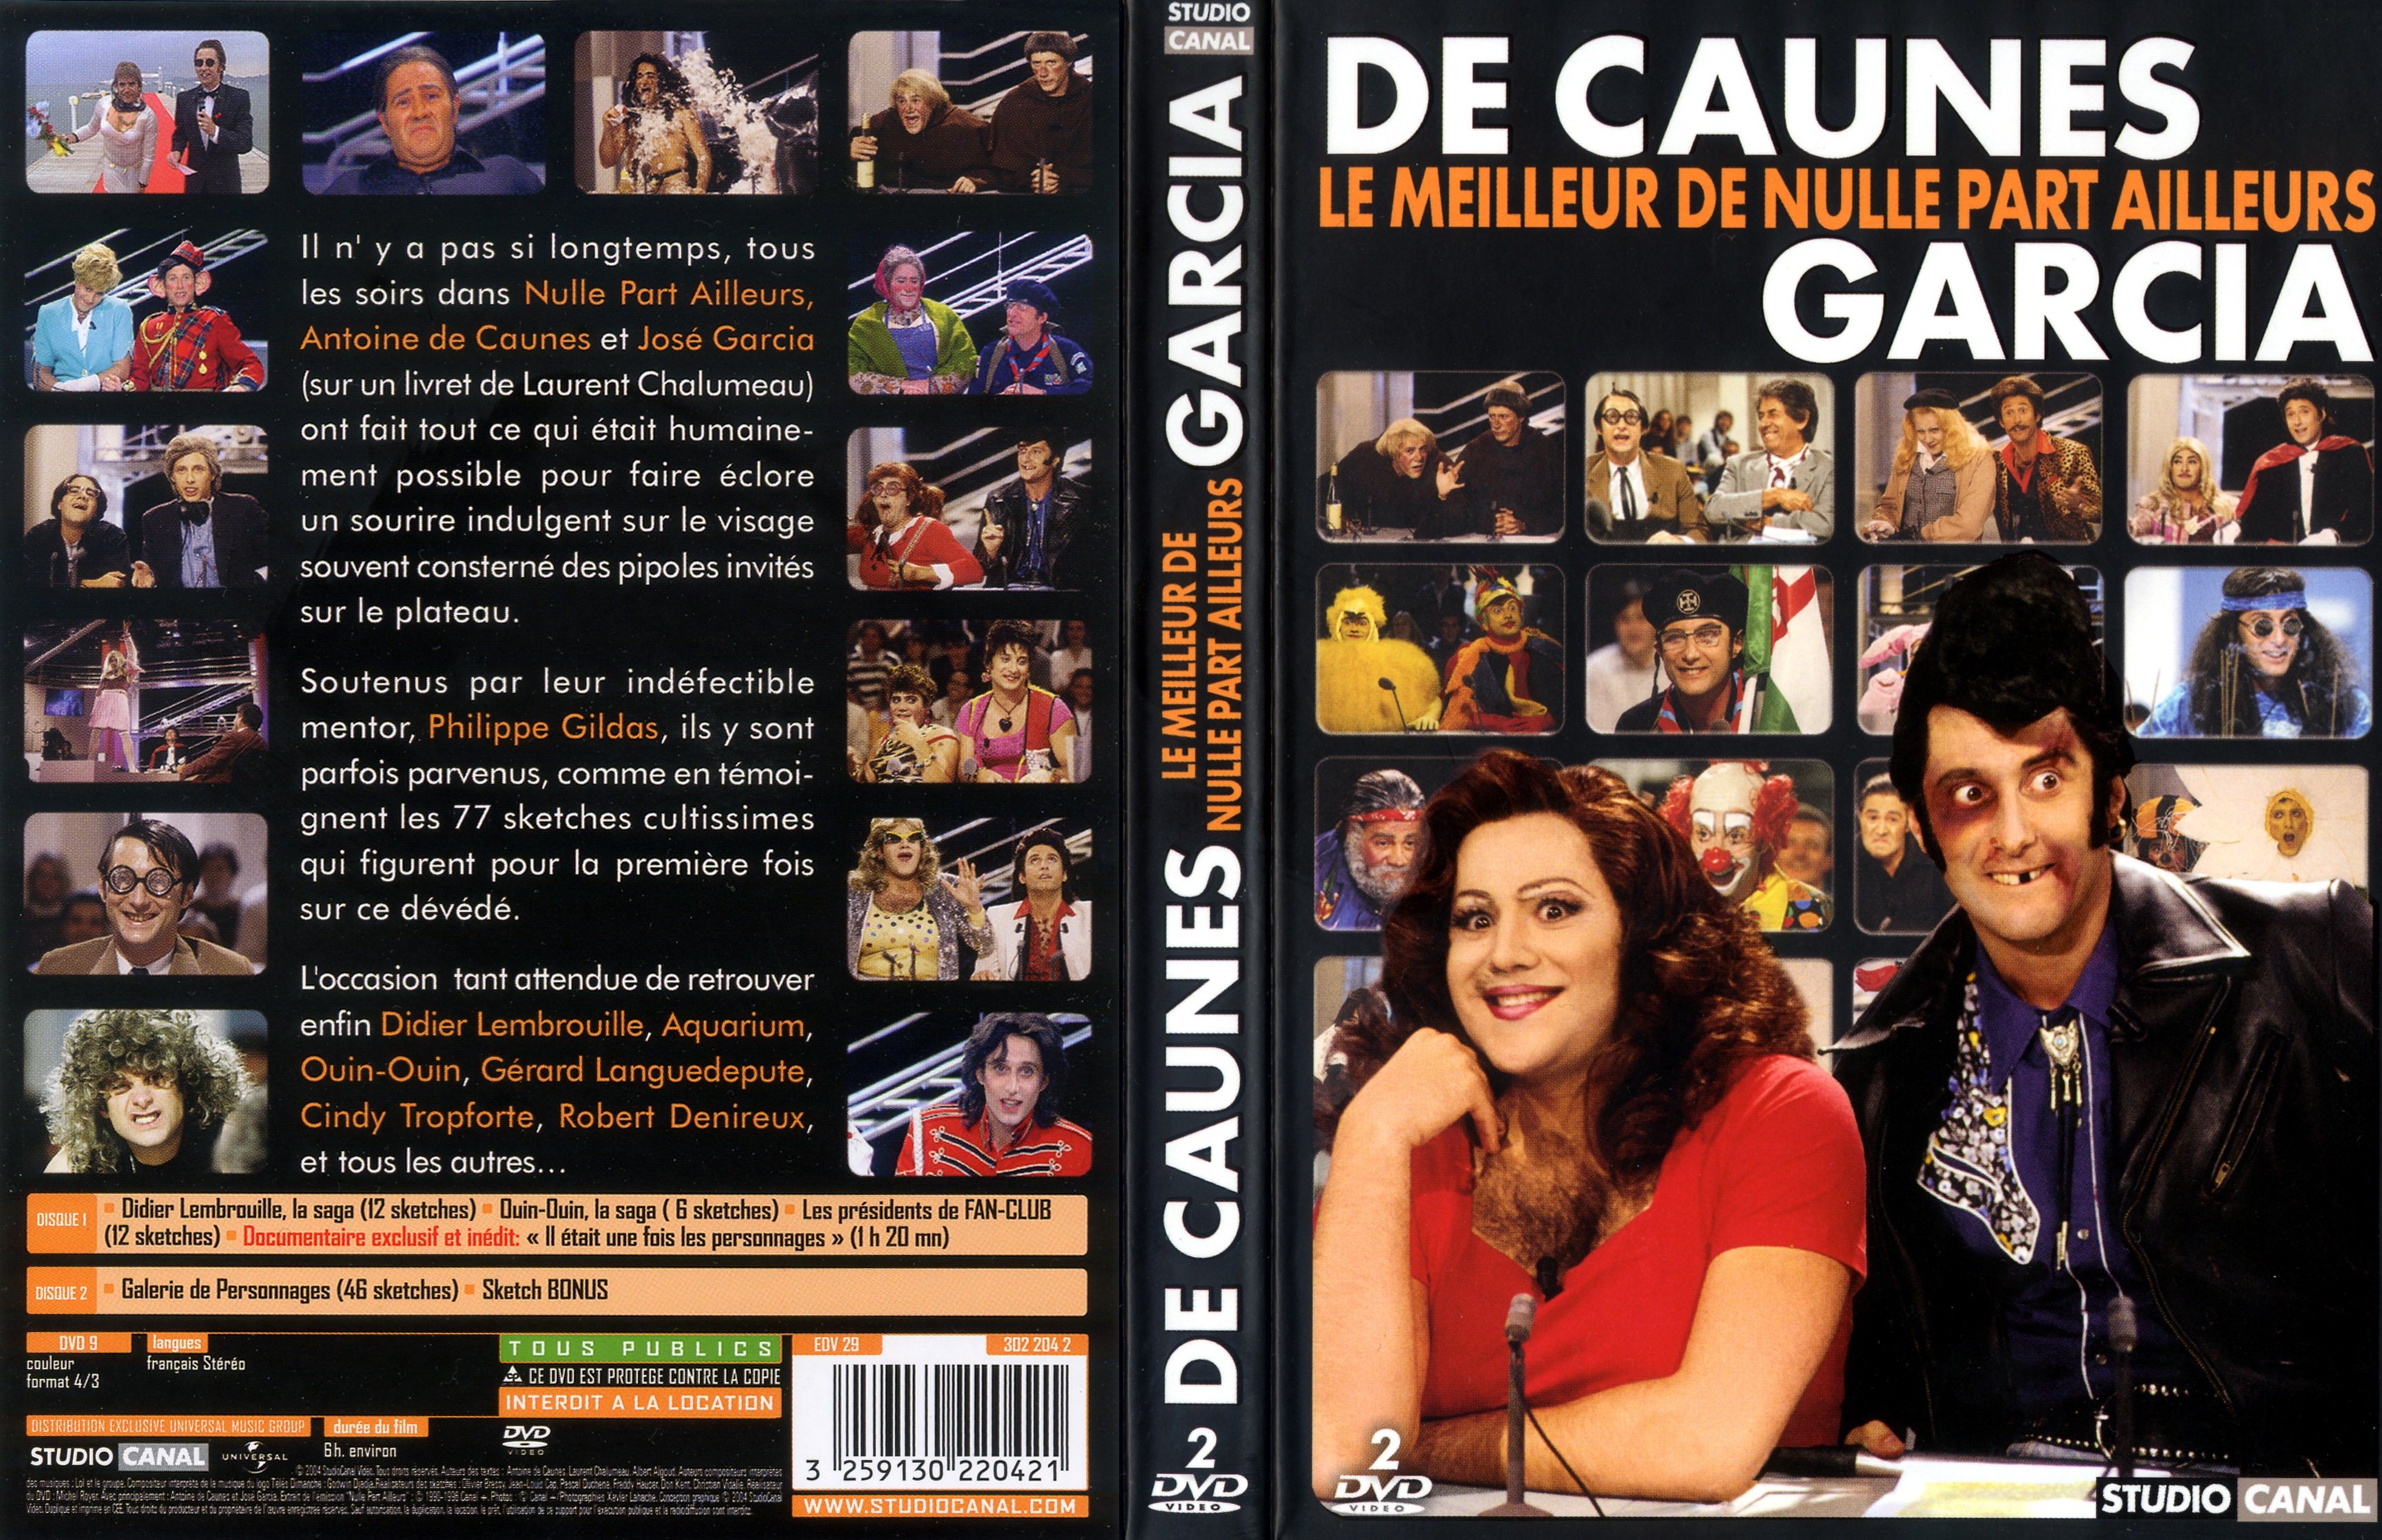 Jaquette DVD De caunes - Garcia le meilleur de NPA